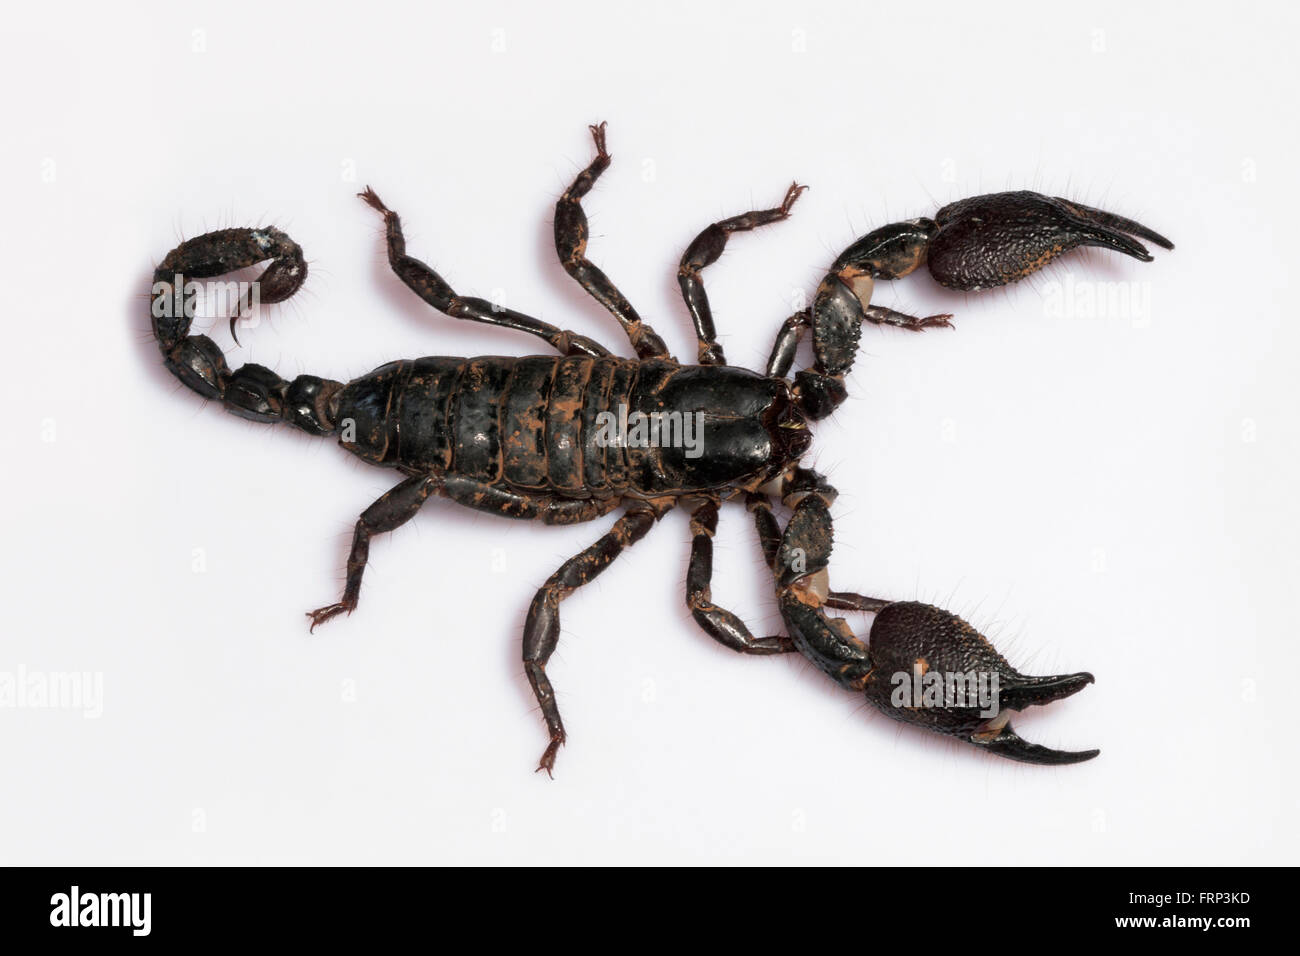 Burrowing scorpion, Heterometrus phipsoni, Scorpionidae, Mumbai, Maharashtra, India Stock Photo